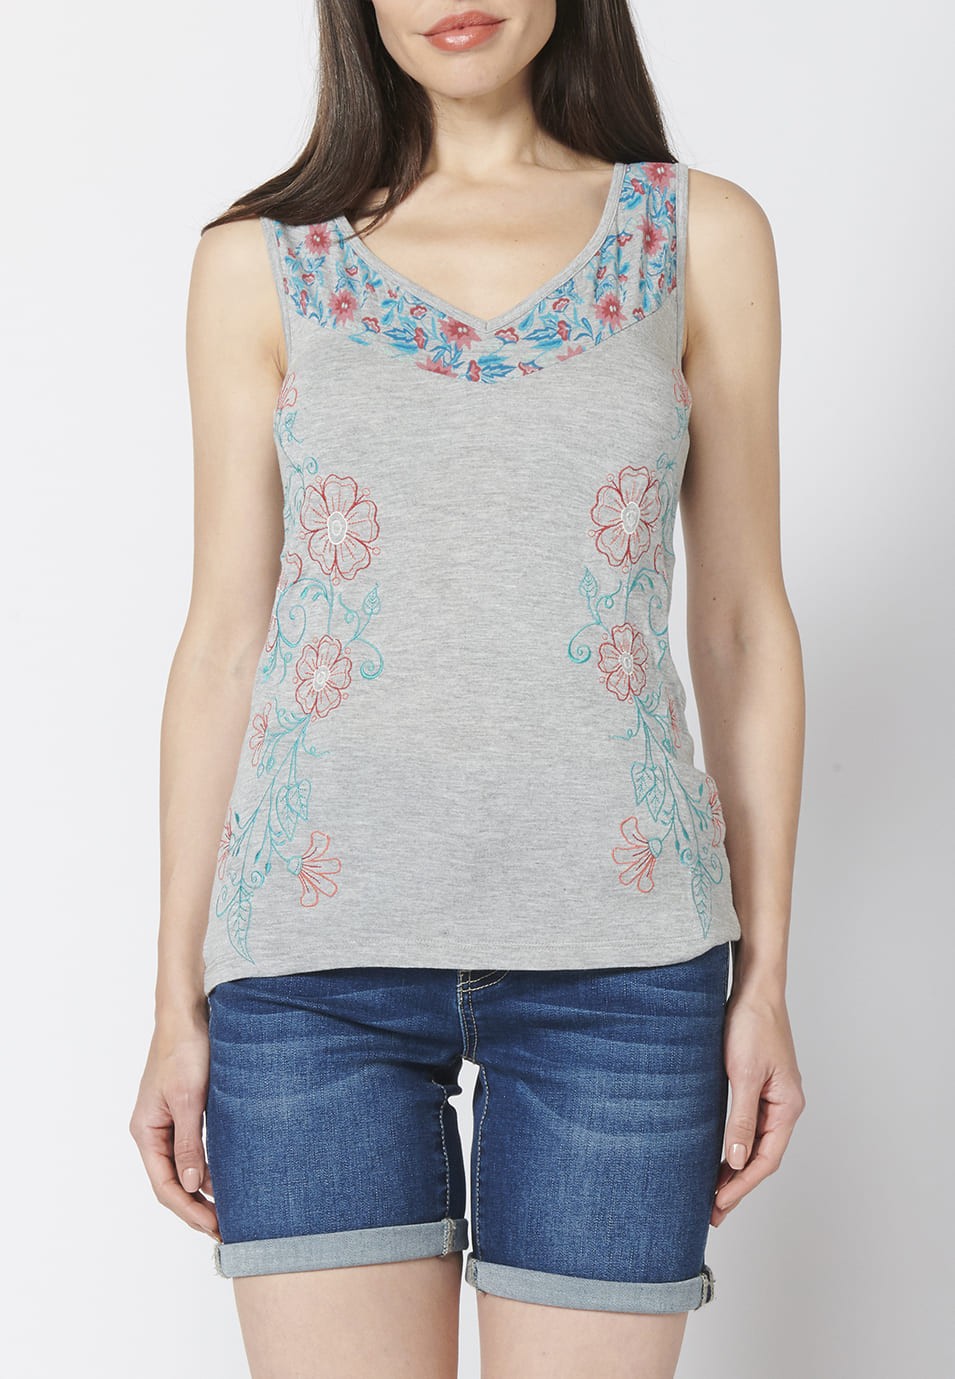 Camiseta Top tirantes con escote en Pico y Estampado y Bordados Florales para Mujer color Gris 1